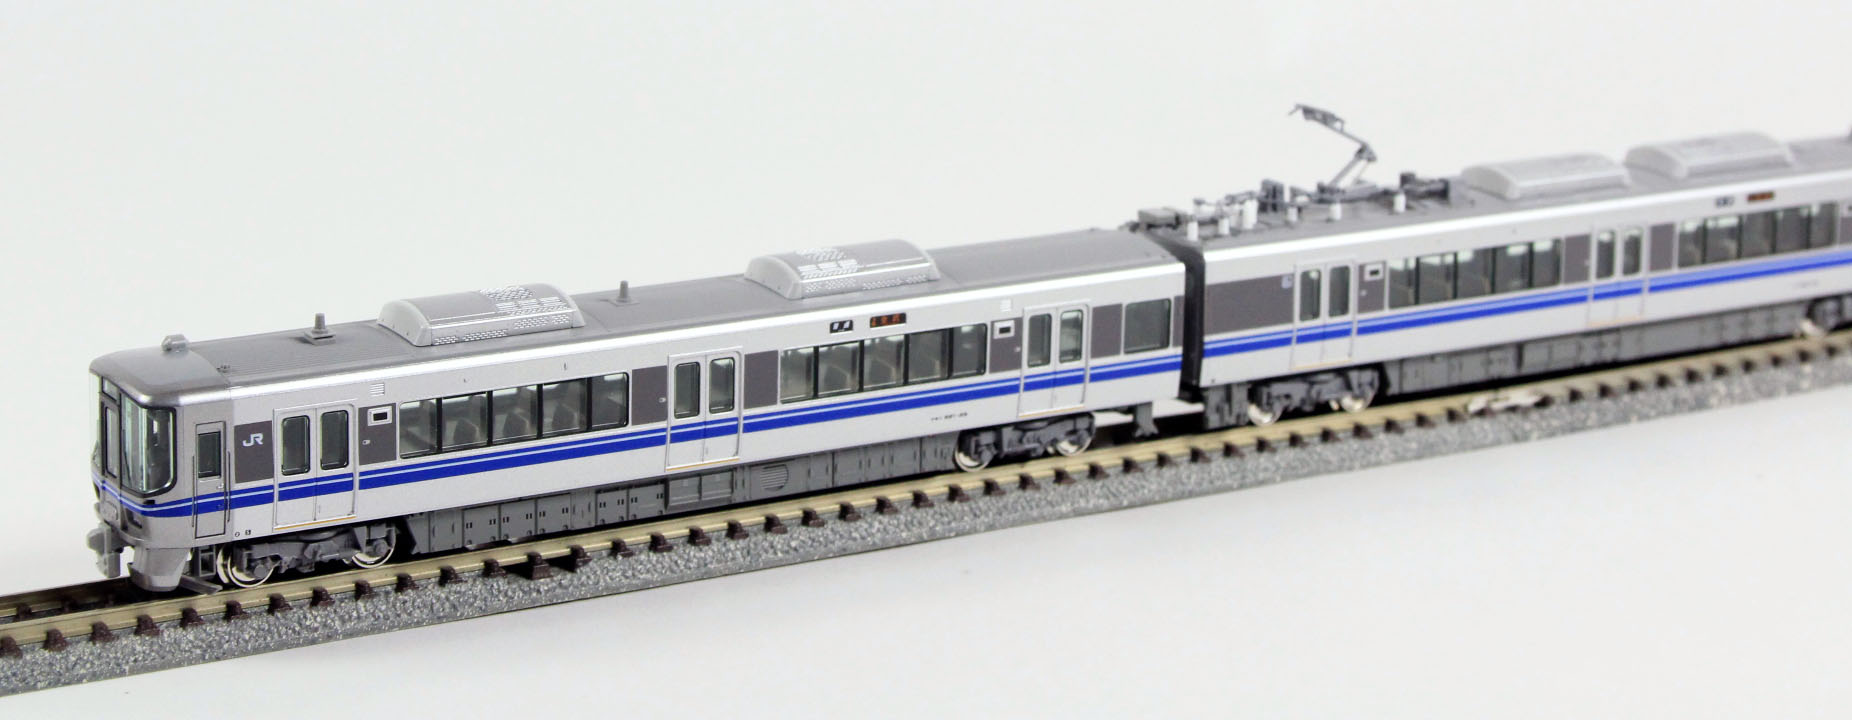 ☆再生産☆ KATO カトー 10-1395 521系 (2次車) 2両セット 鉄道模型 N 